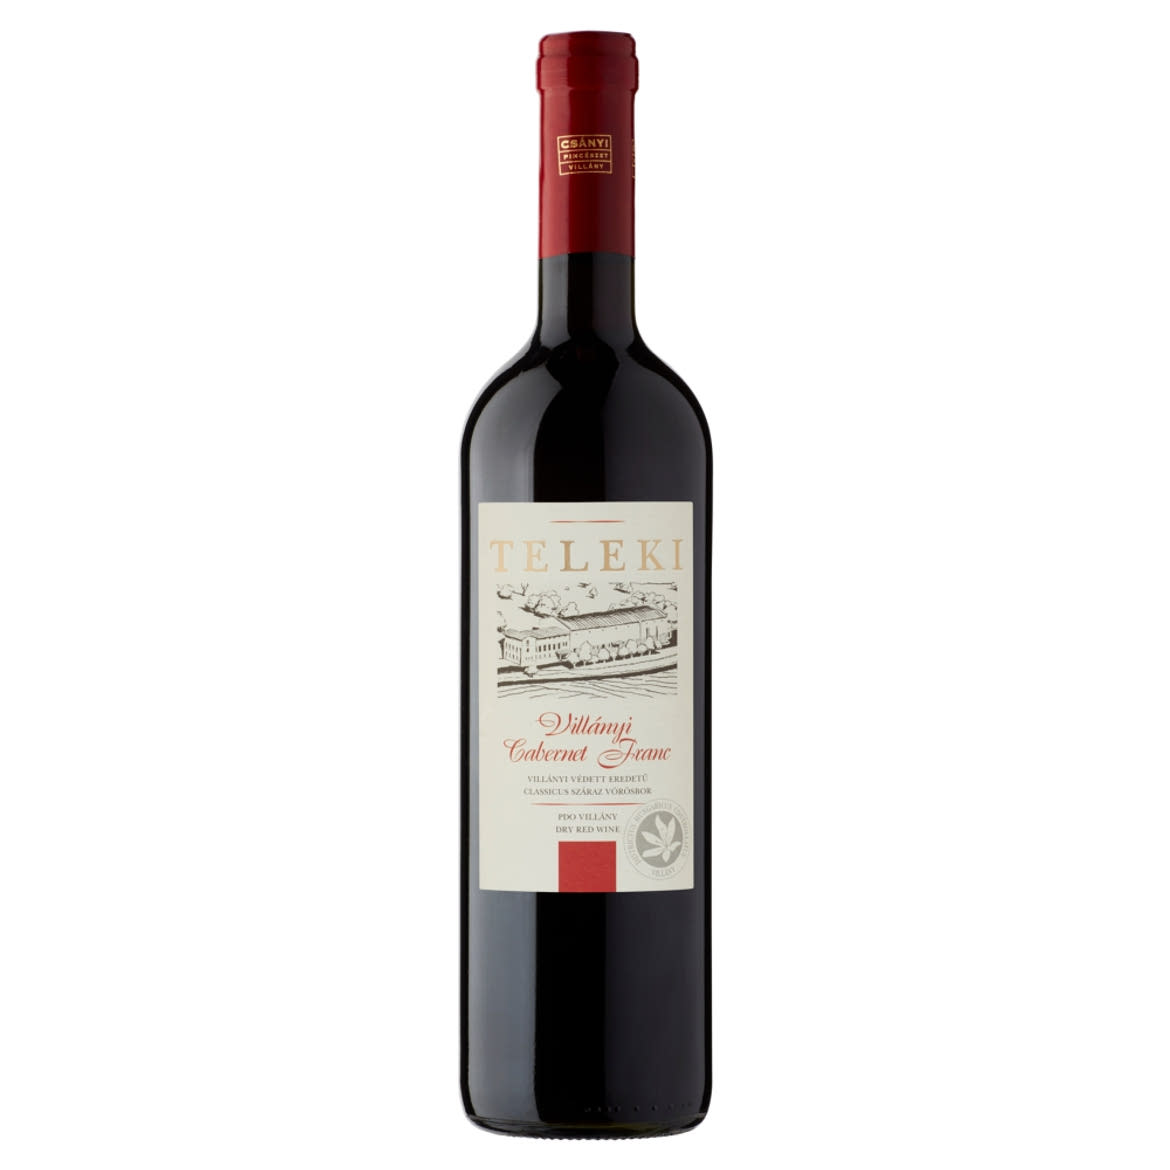 Csányi Pincészet Teleki Villányi Cabernet Franc classicus száraz vörösbor 14,5%